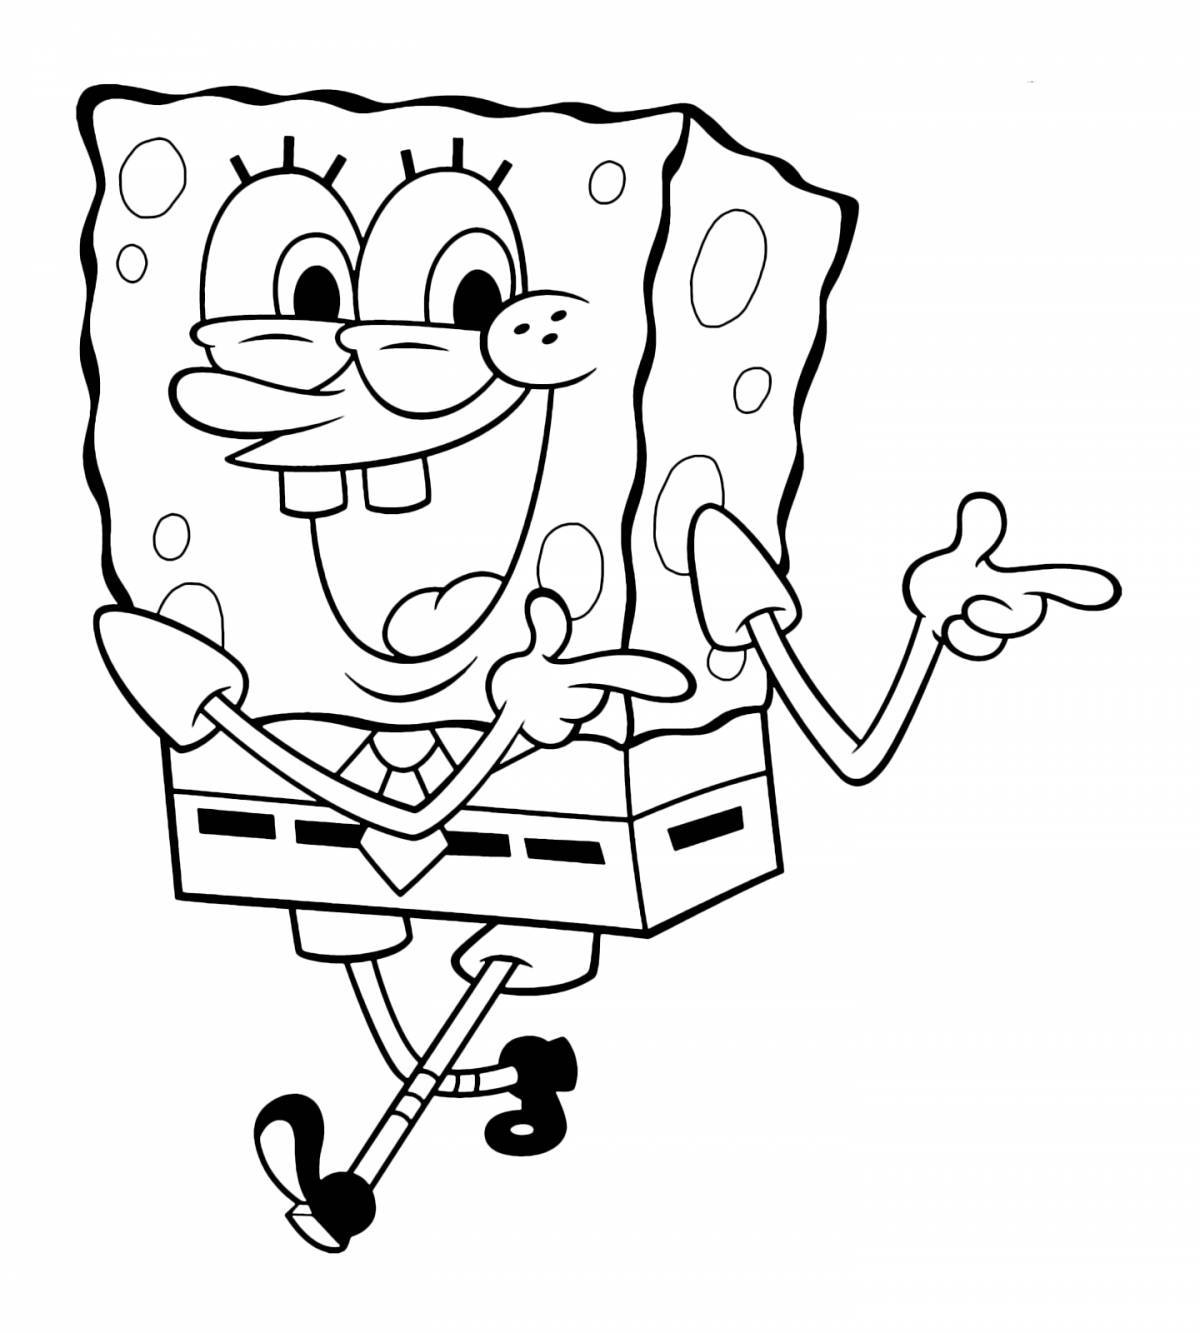 Раскраска radiant sponge bob square pants